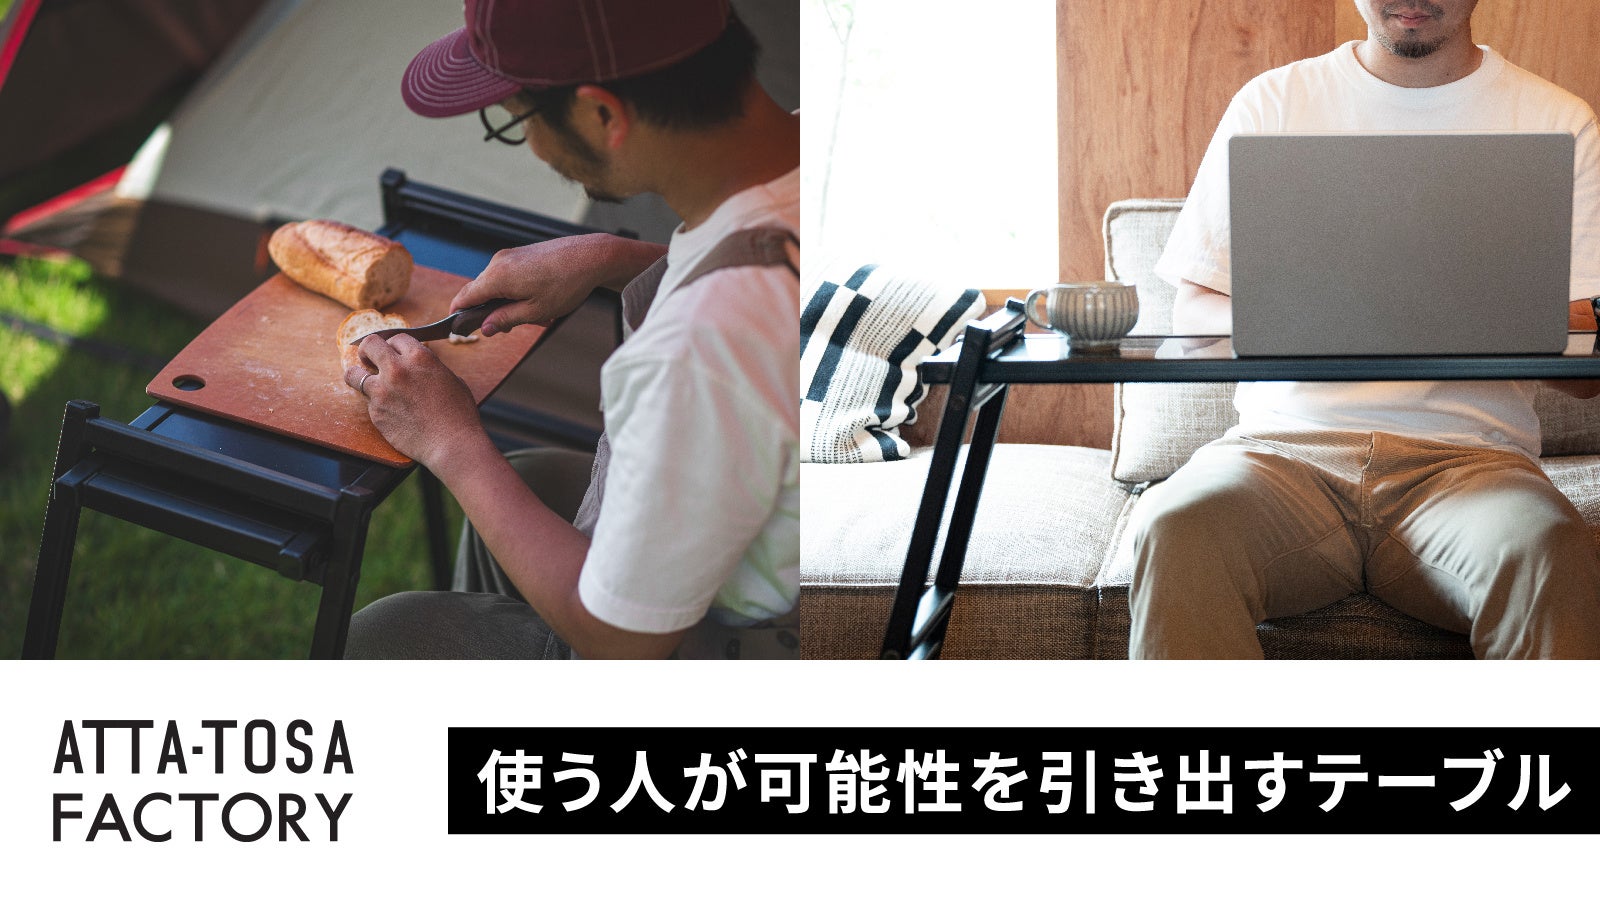 【大阪・堺のものづくり企業】アトツギ事業者とプロデュースしたプラットフォームから、第一弾プロダクトを先行リリースのサブ画像1